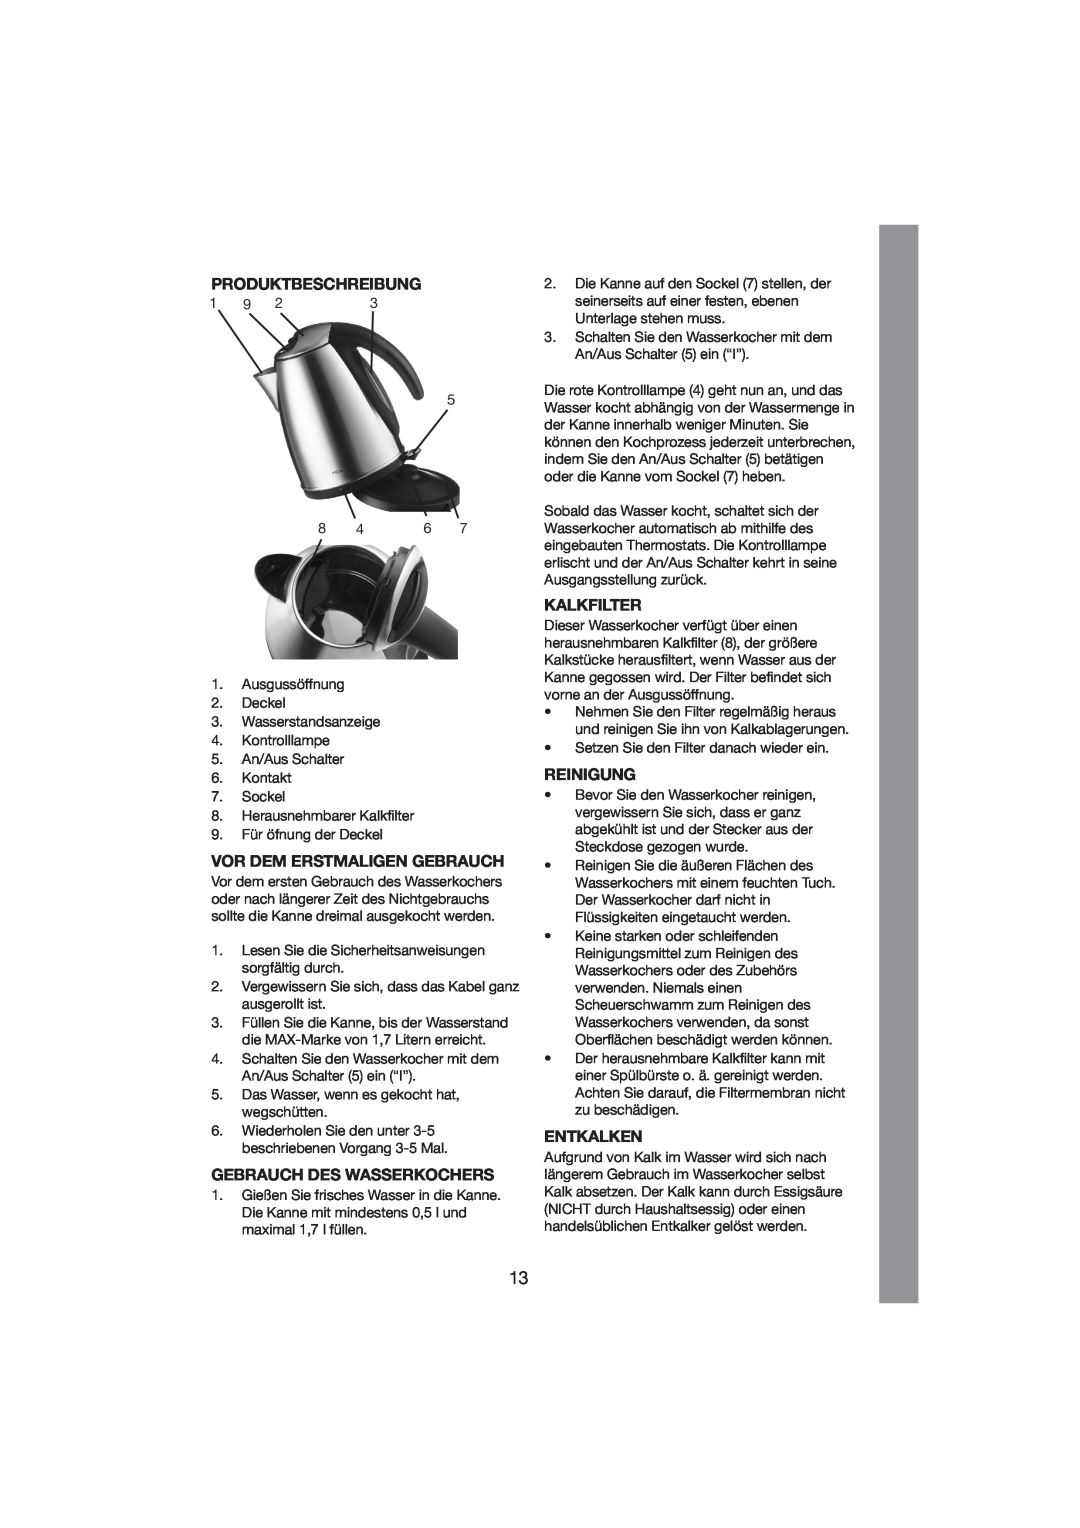 Melissa 245-029 manual Produktbeschreibung, Vor Dem Erstmaligen Gebrauch, Gebrauch Des Wasserkochers, Reinigung, Entkalken 